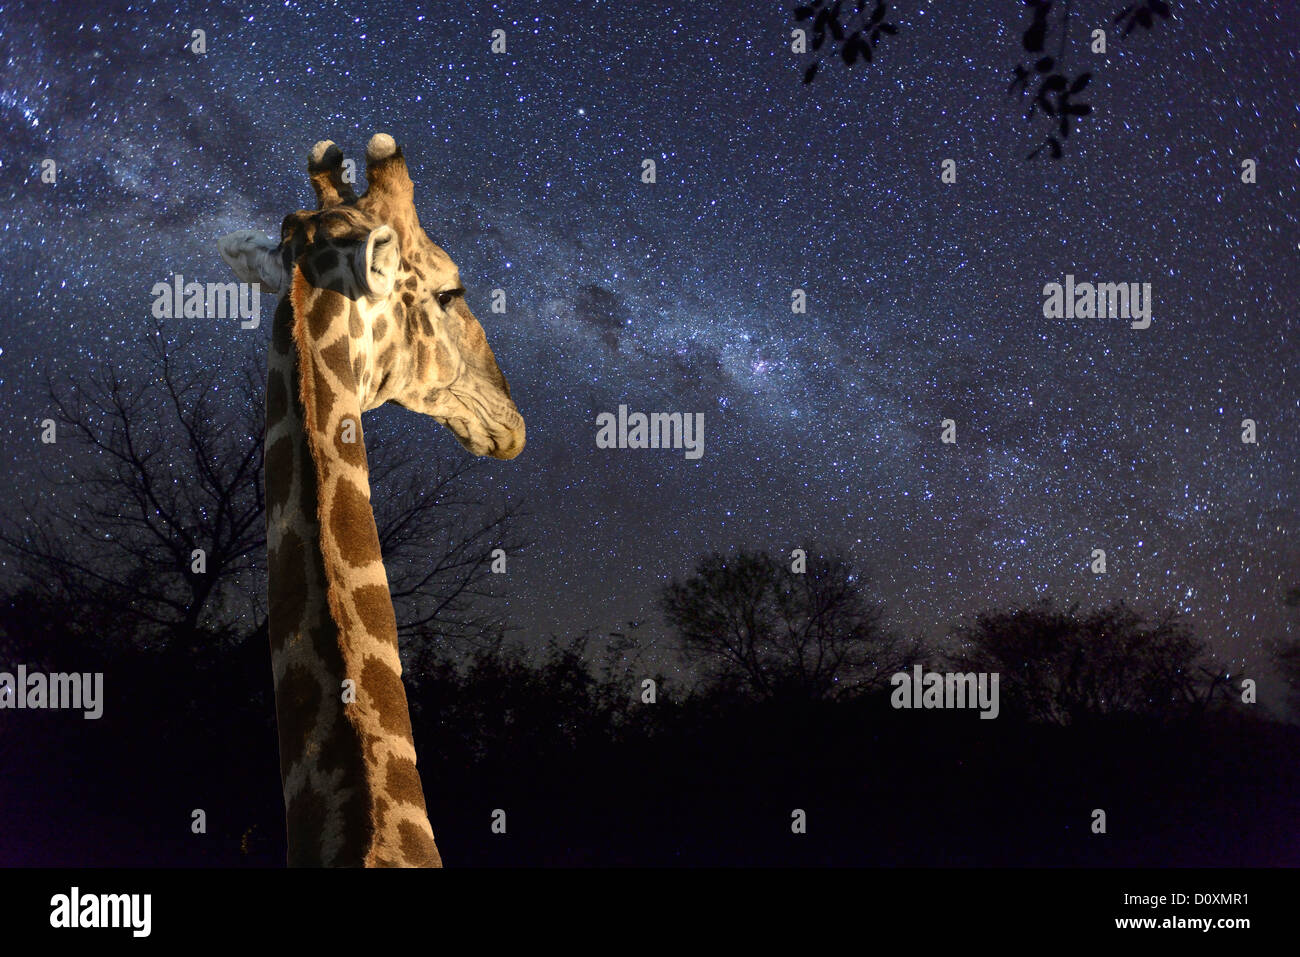 África, Sur Namibiai, noche, cielo, estrellas, astro, fotografía, spangled cielo estrellado, jirafas, Grootfontein Foto de stock